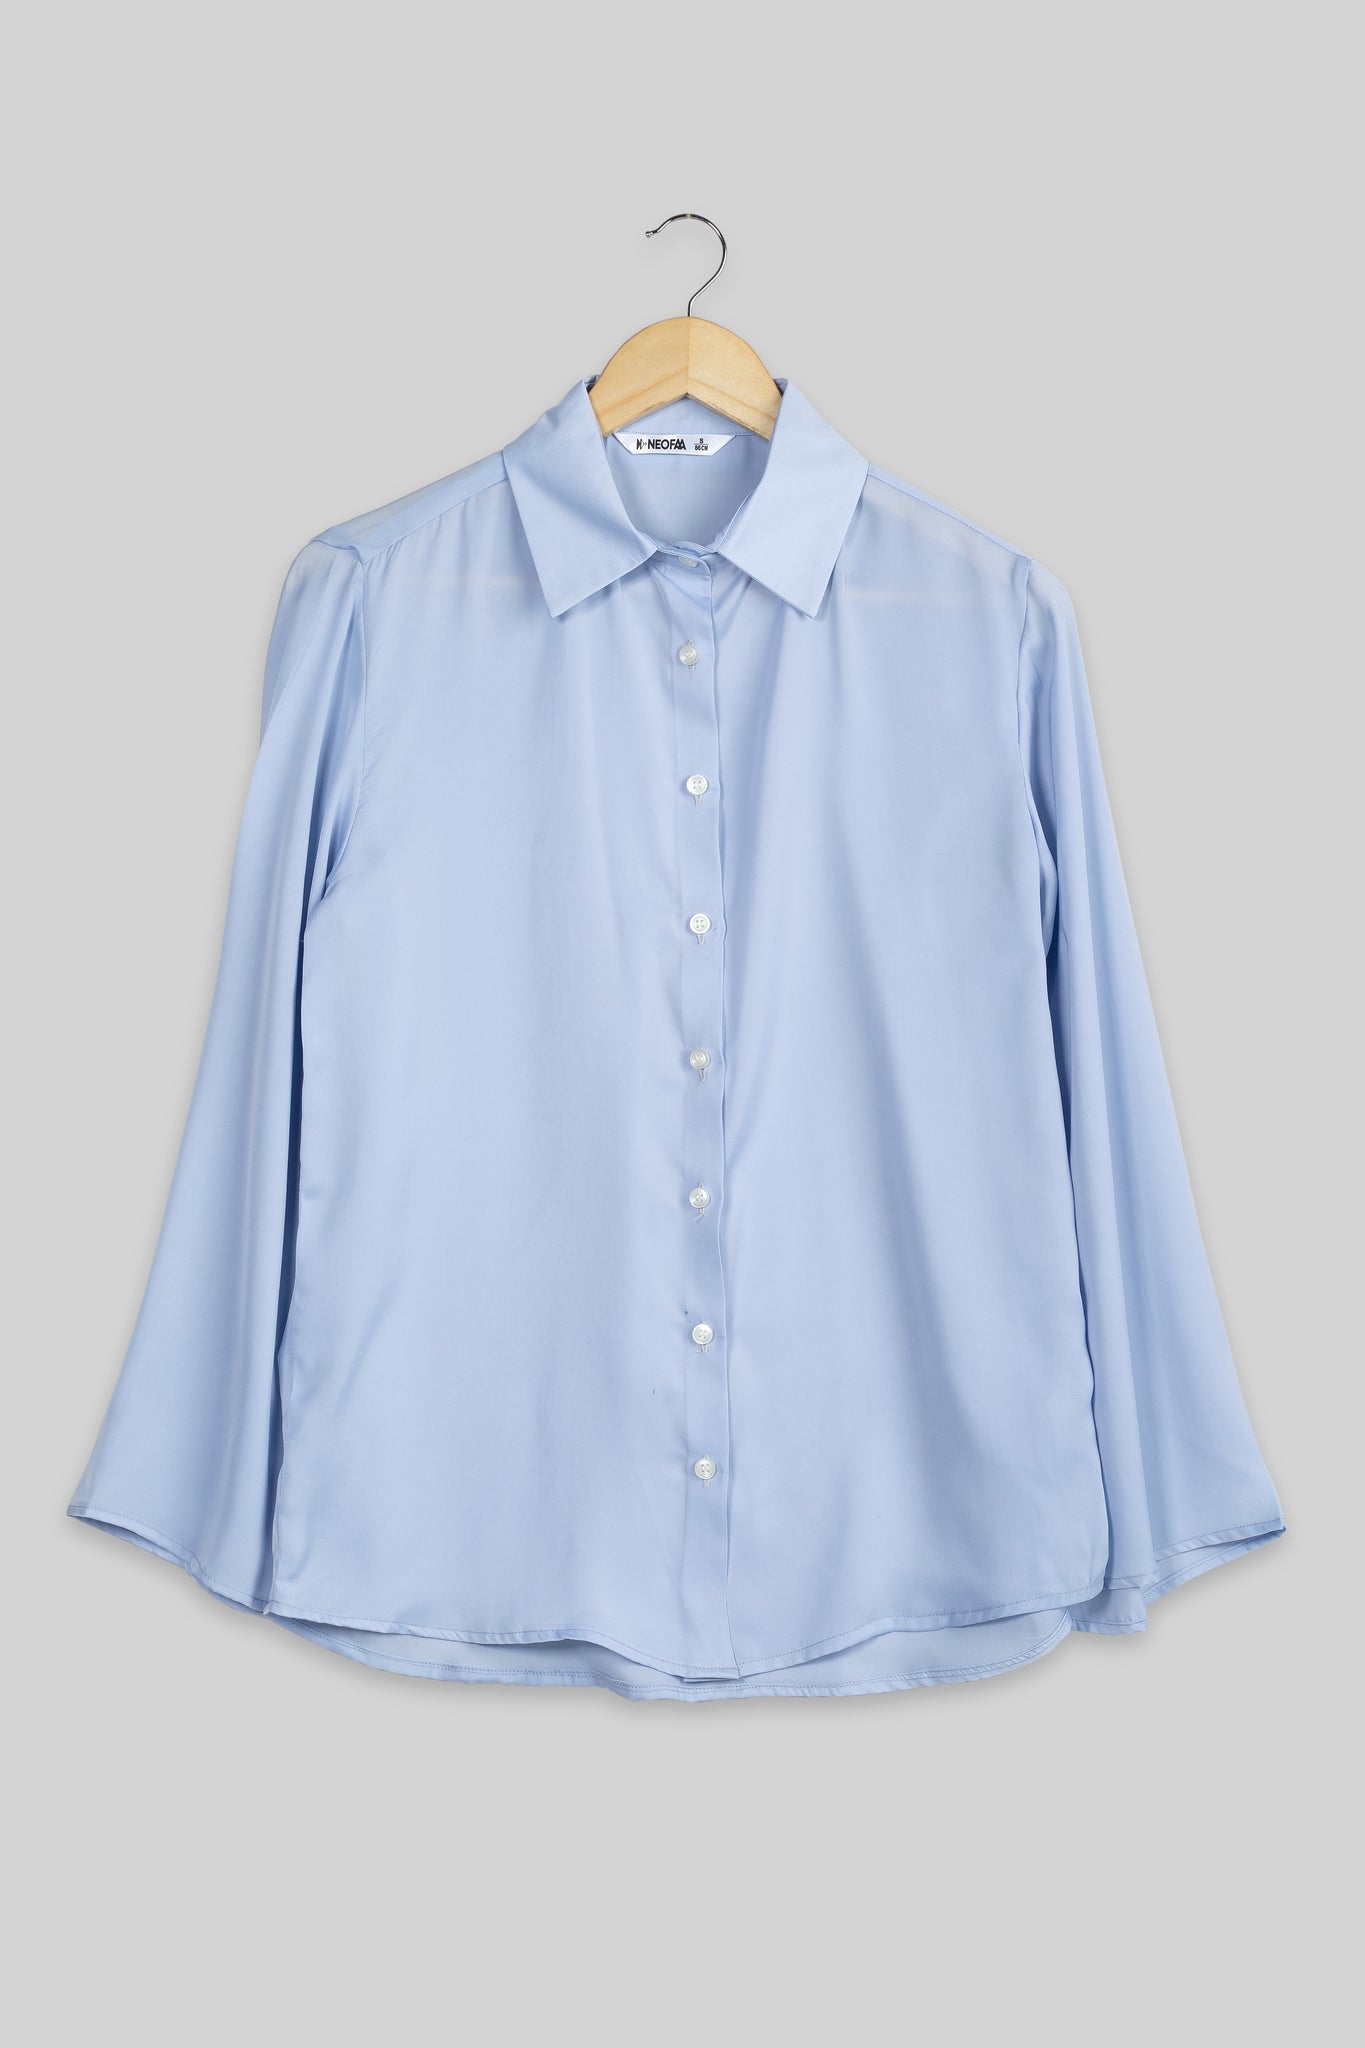 Zenith Bell Sleeve Shirt For Women